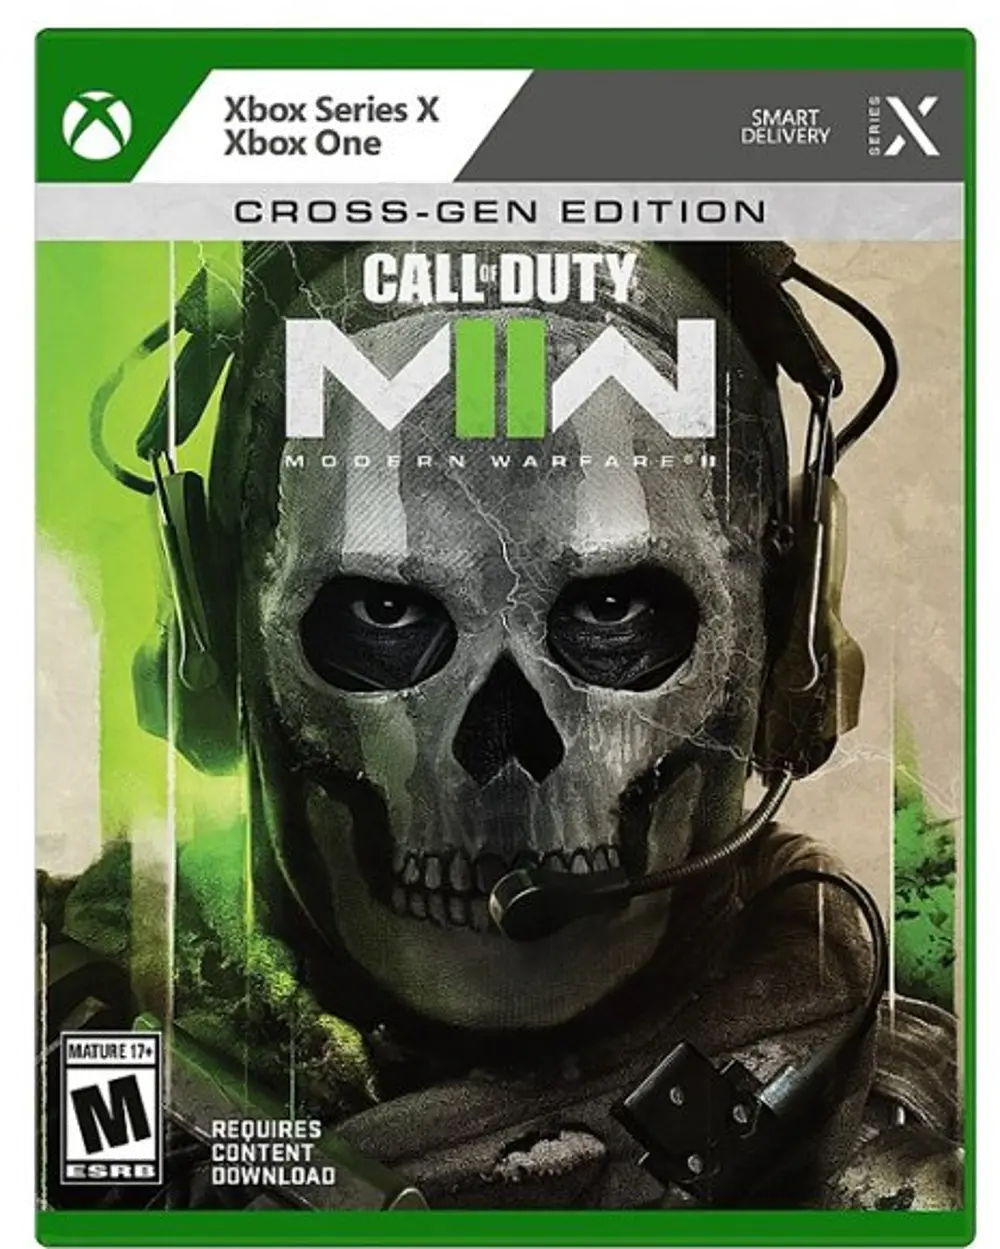 XBSX/COD:MF_II Call of Duty: Modern Warfare II - Xbox Series X-1